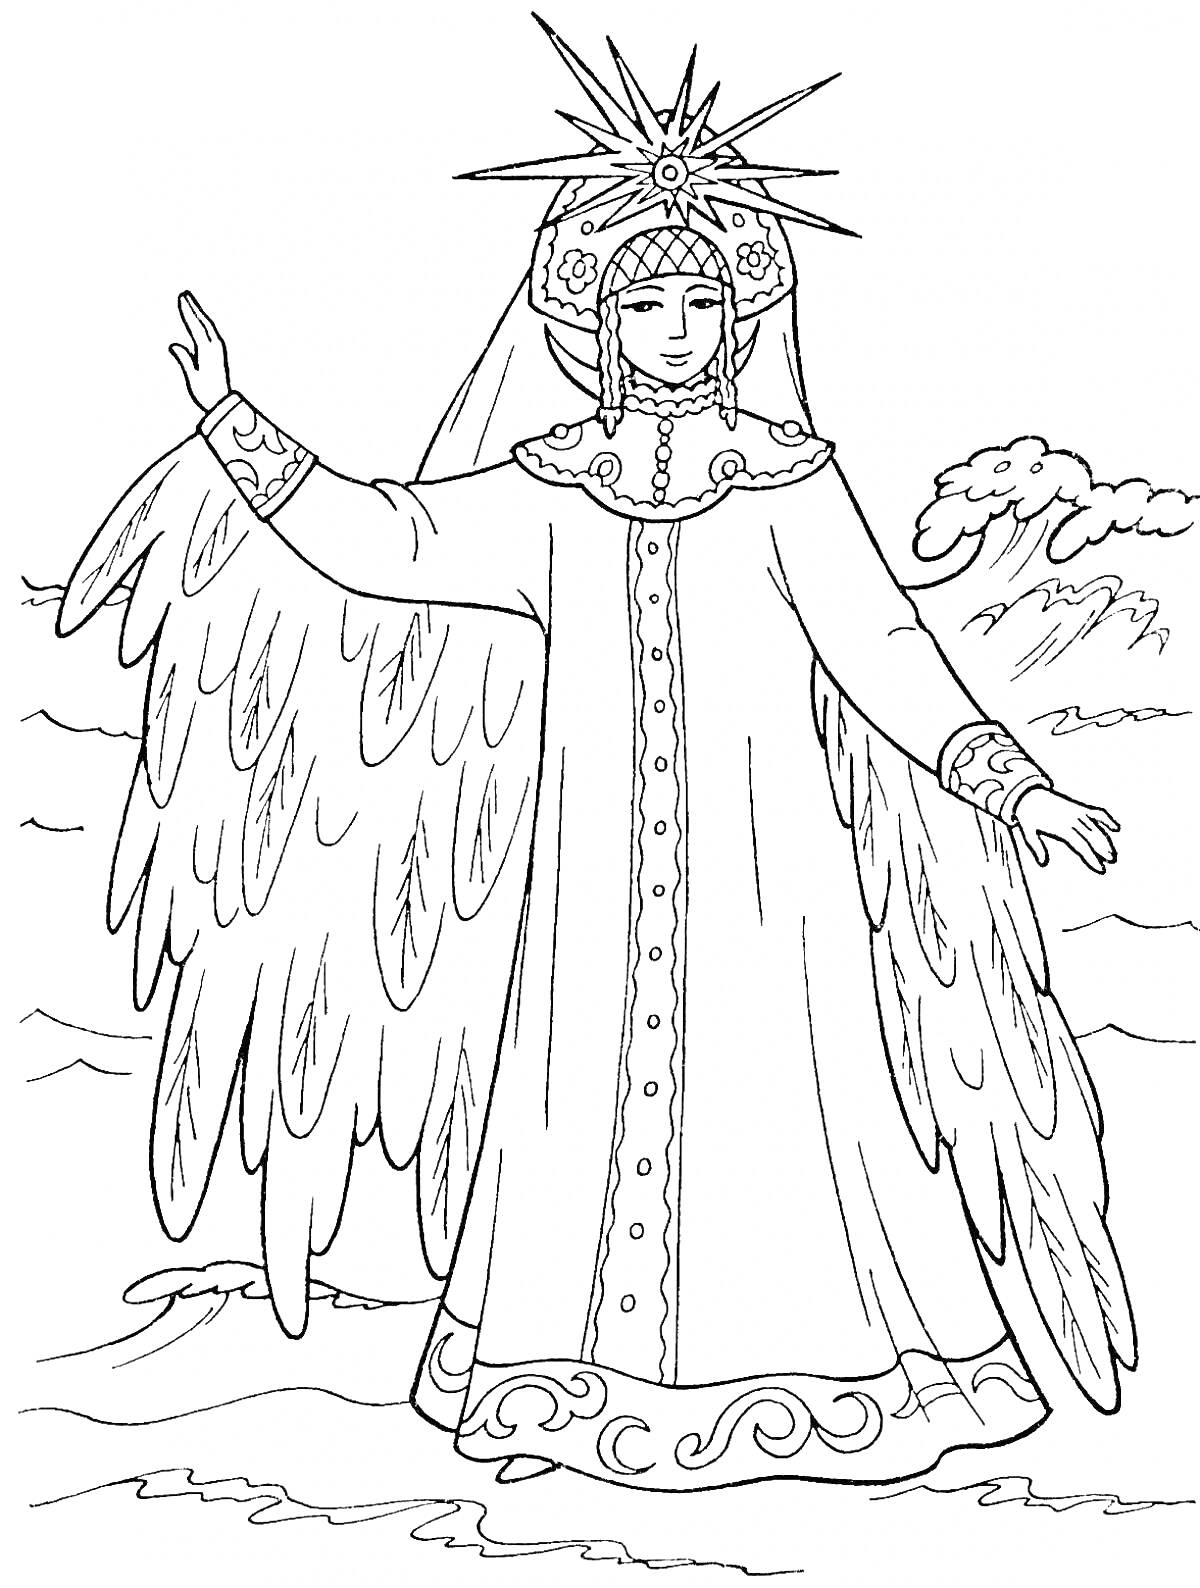 Раскраска Хозяйка Медной горы в длинном одеянии с развевающимися рукавами, в короне с длинными волосами, стоит на фоне гор.